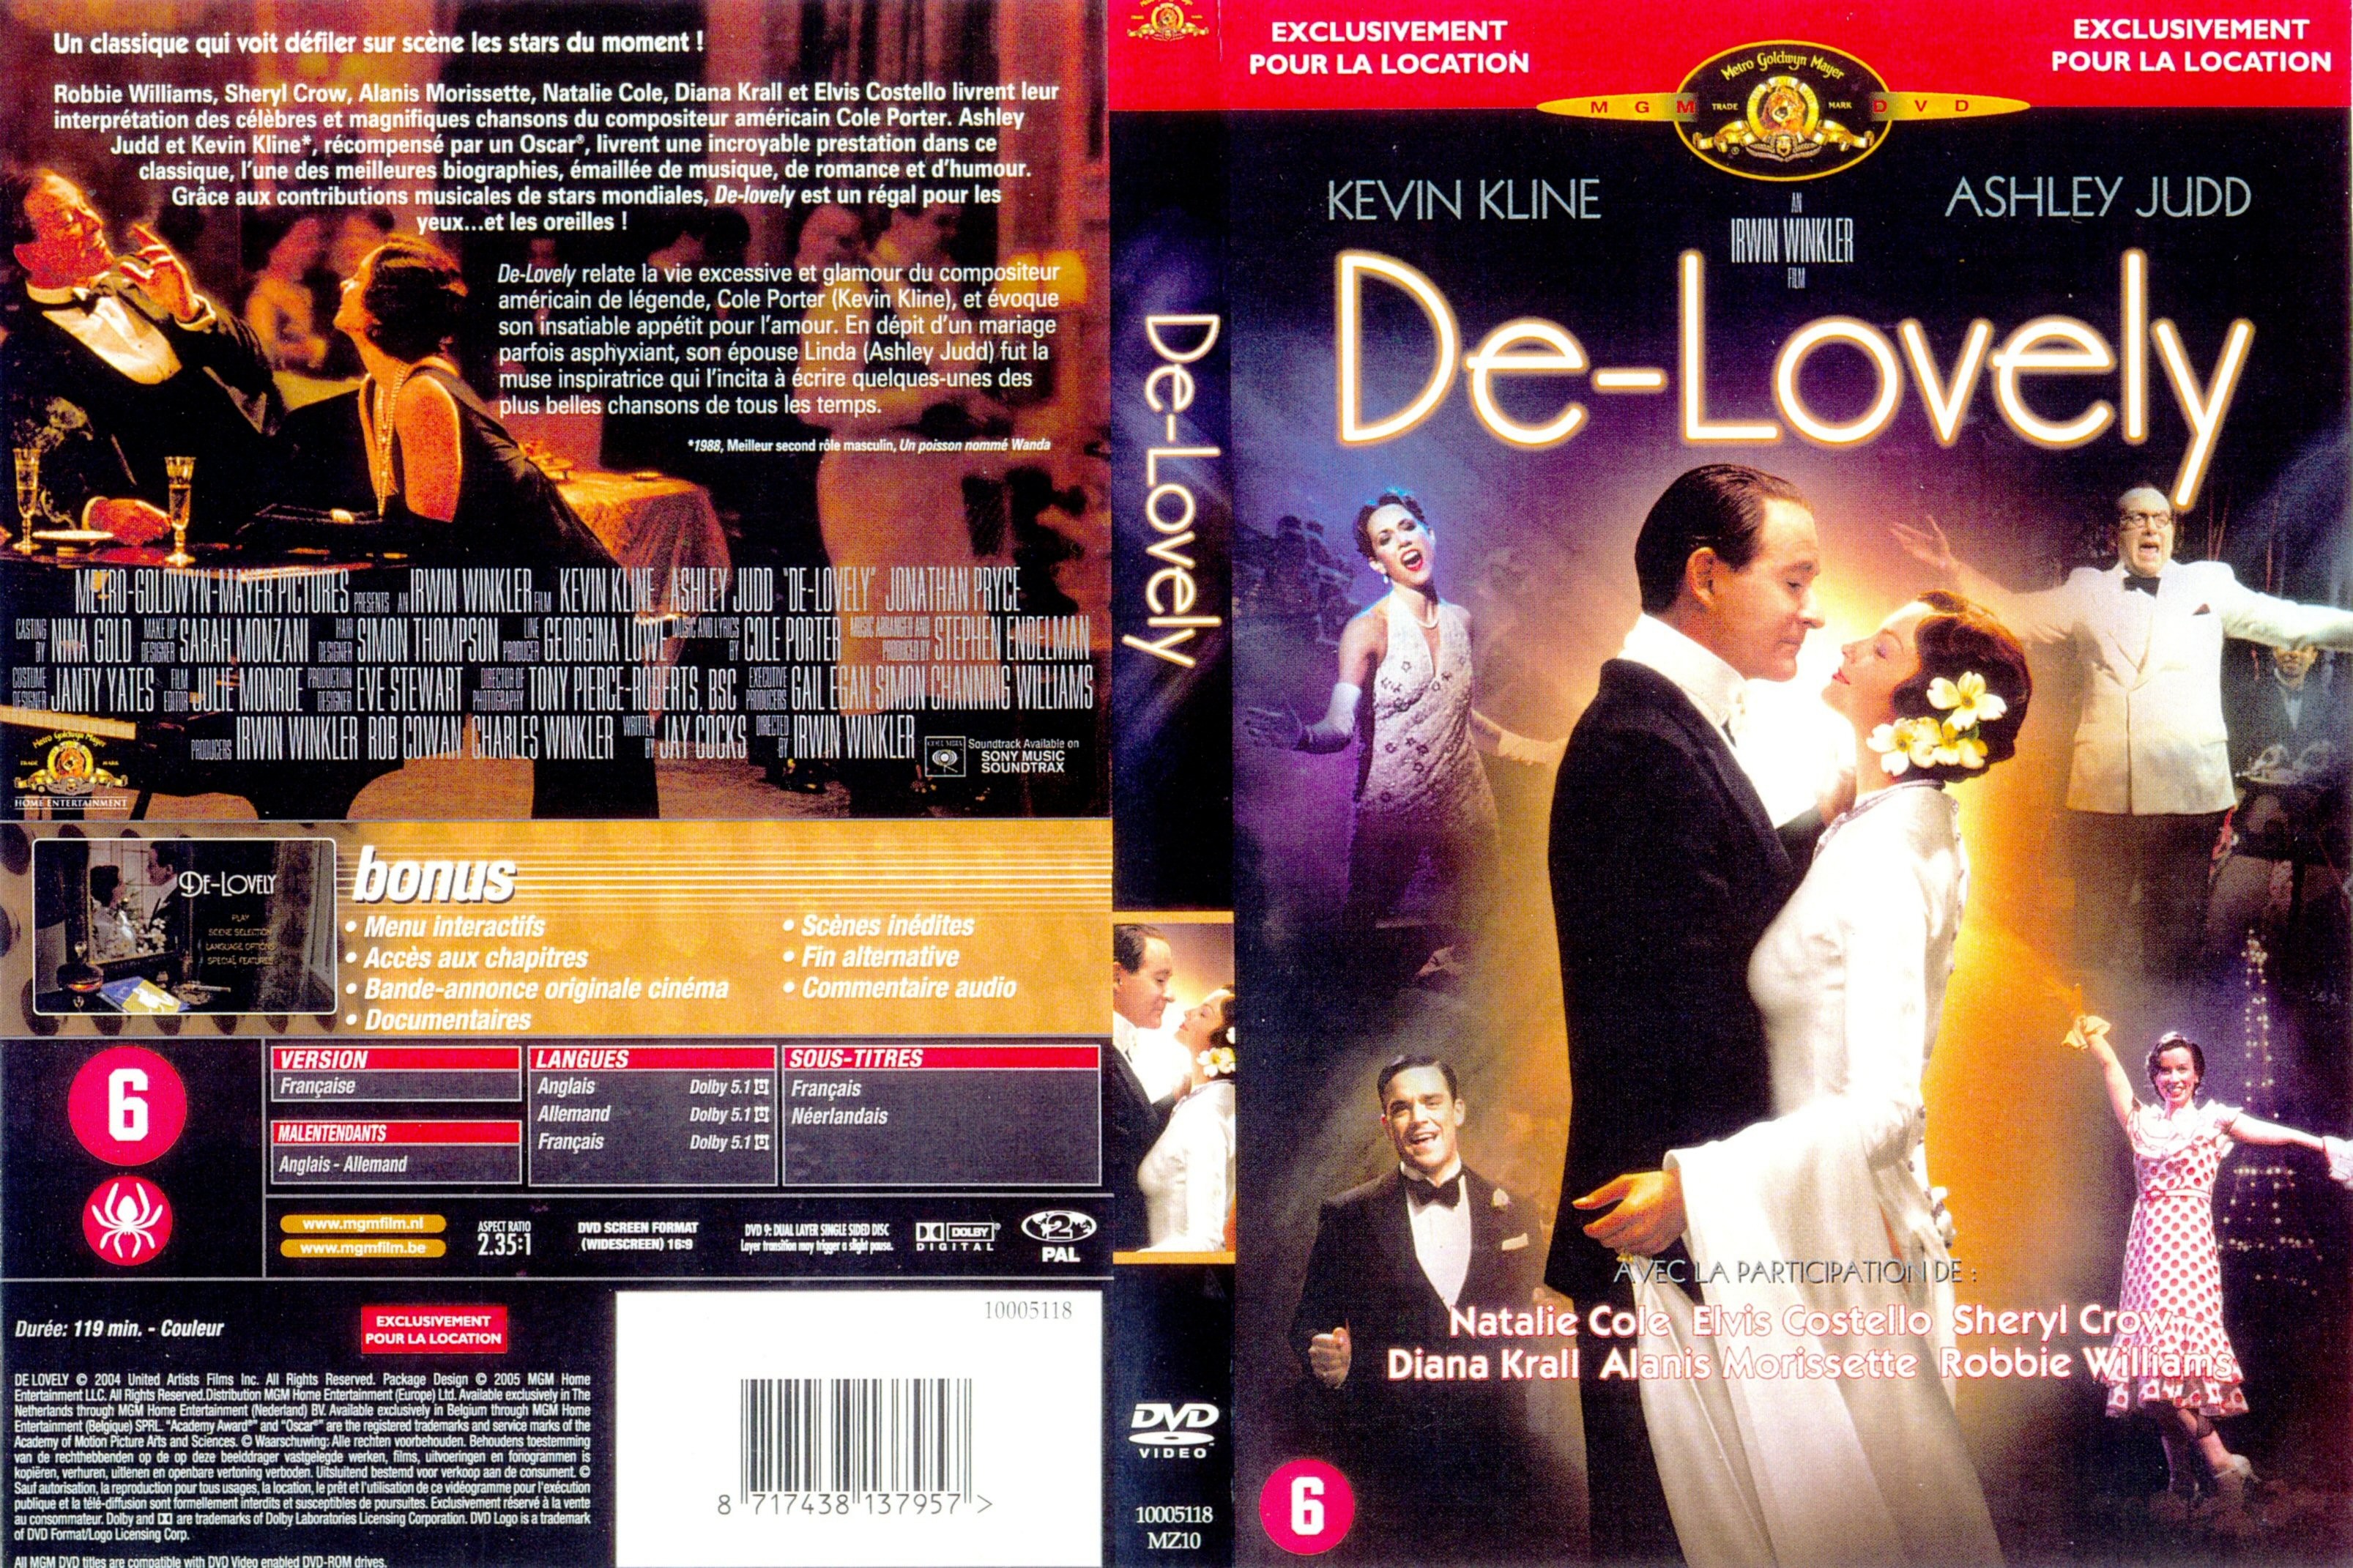 Jaquette DVD De-Lovely v2